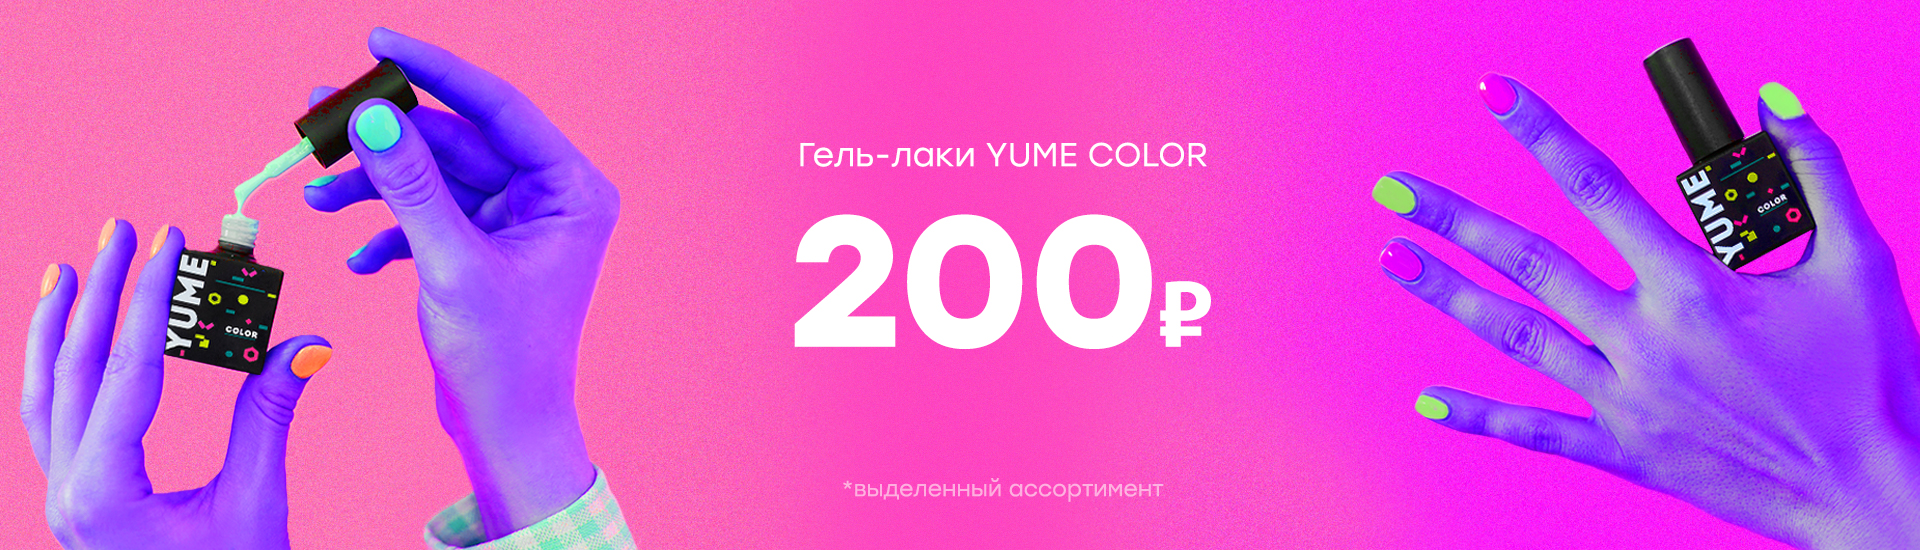 Гель-лаки YUME COLOR - 200 рублей!